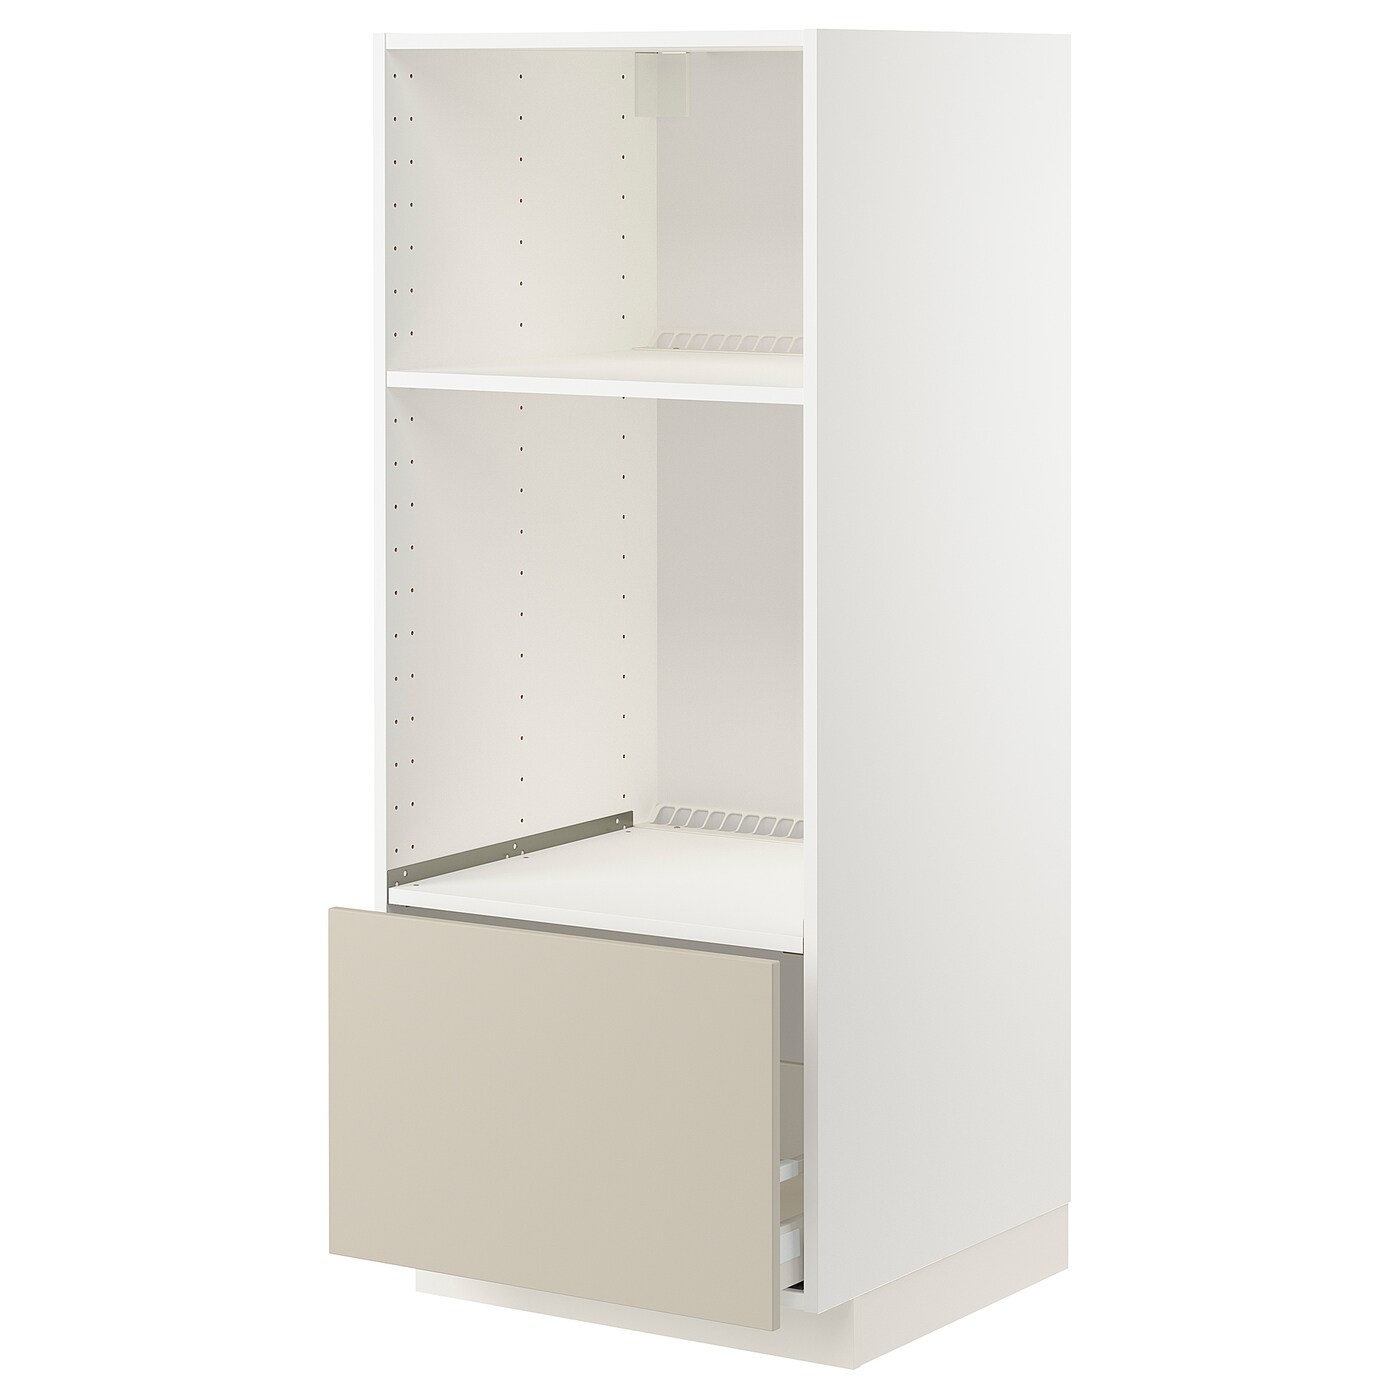 Напольный шкаф  - IKEA METOD MAXIMERA, 148x61,6x60см, белый/бежевый, МЕТОД МАКСИМЕРА ИКЕА